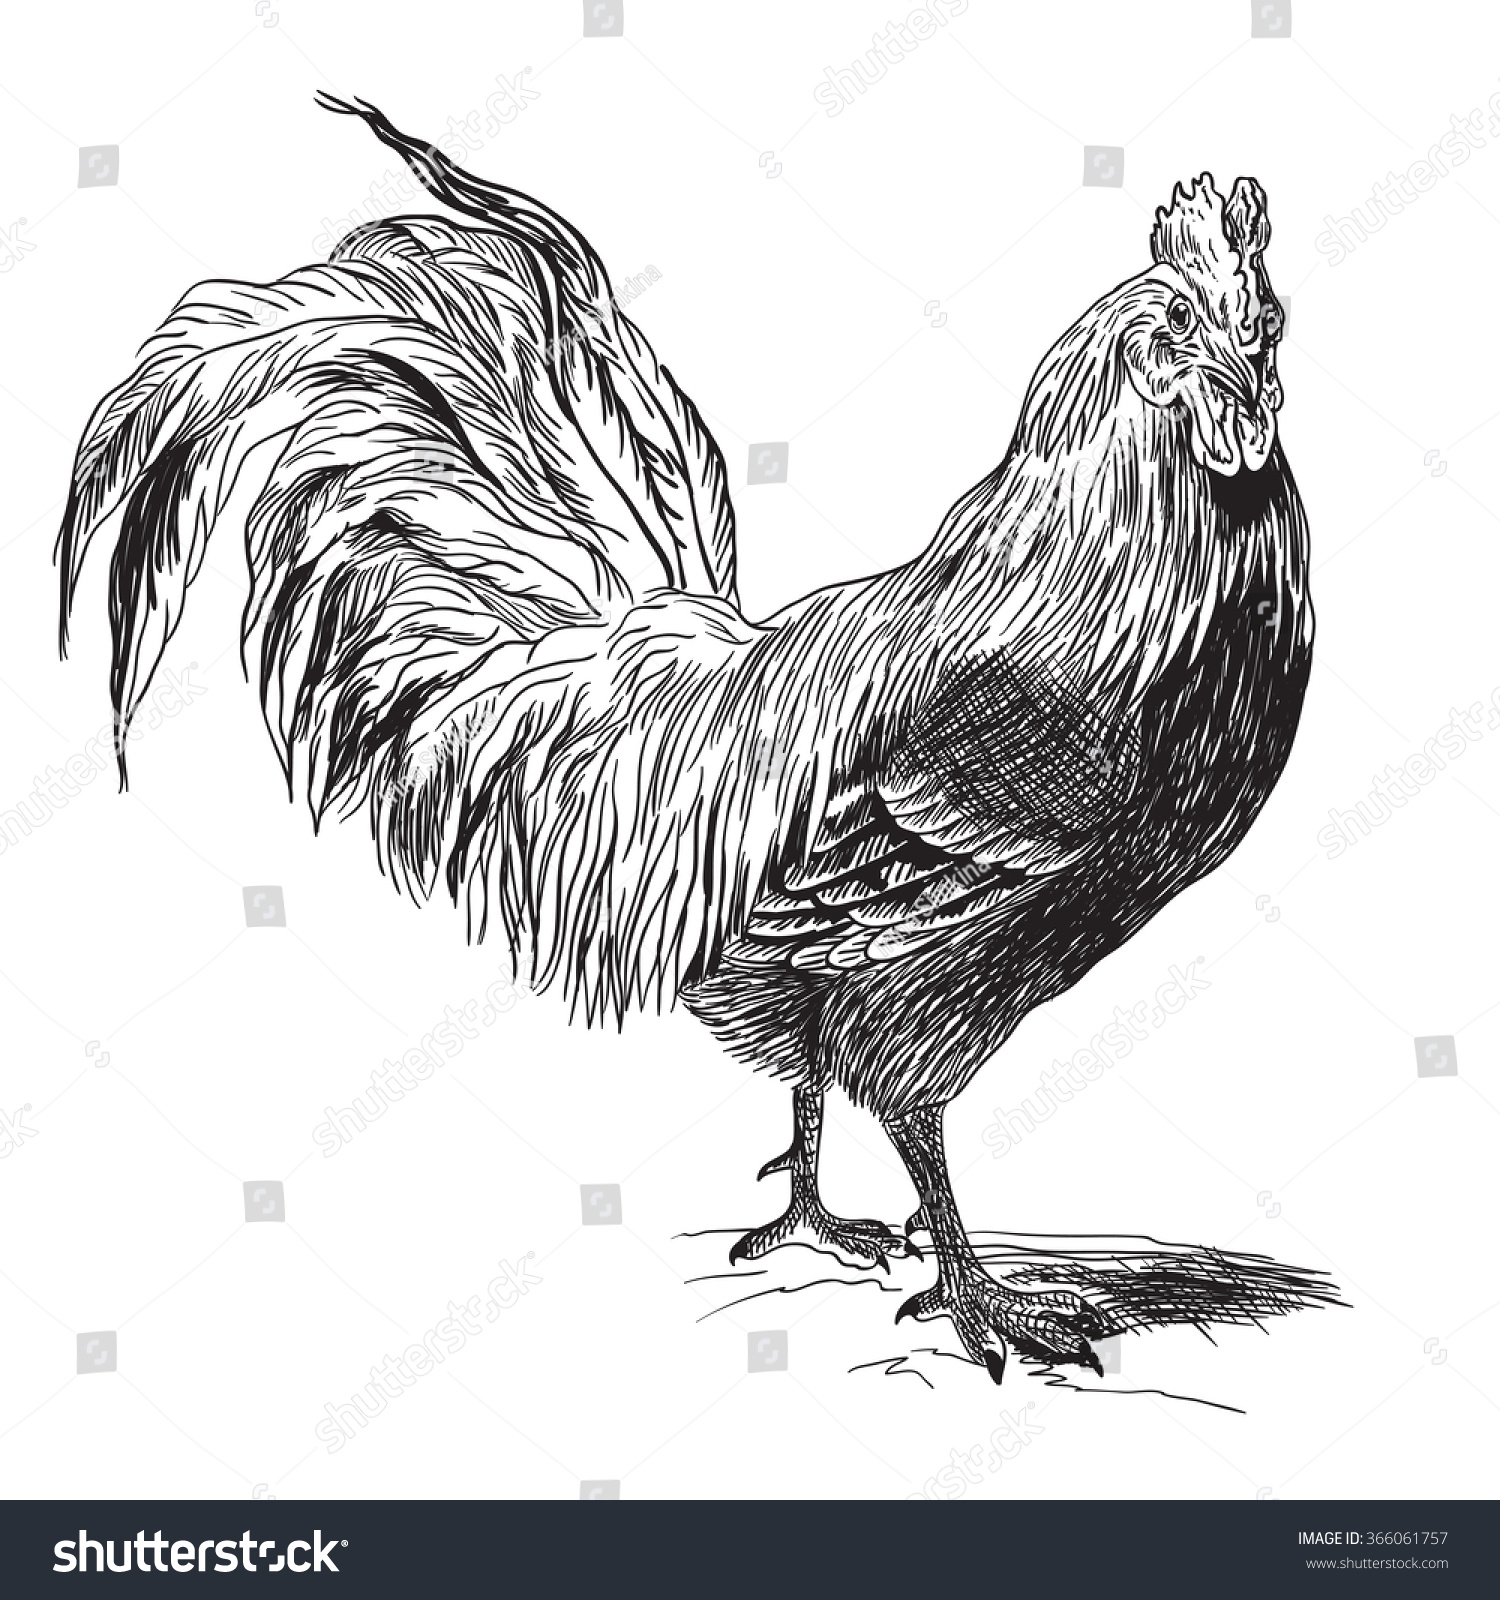 SVG of Rooster or Cockerel or Cock, vintage engraving.  svg